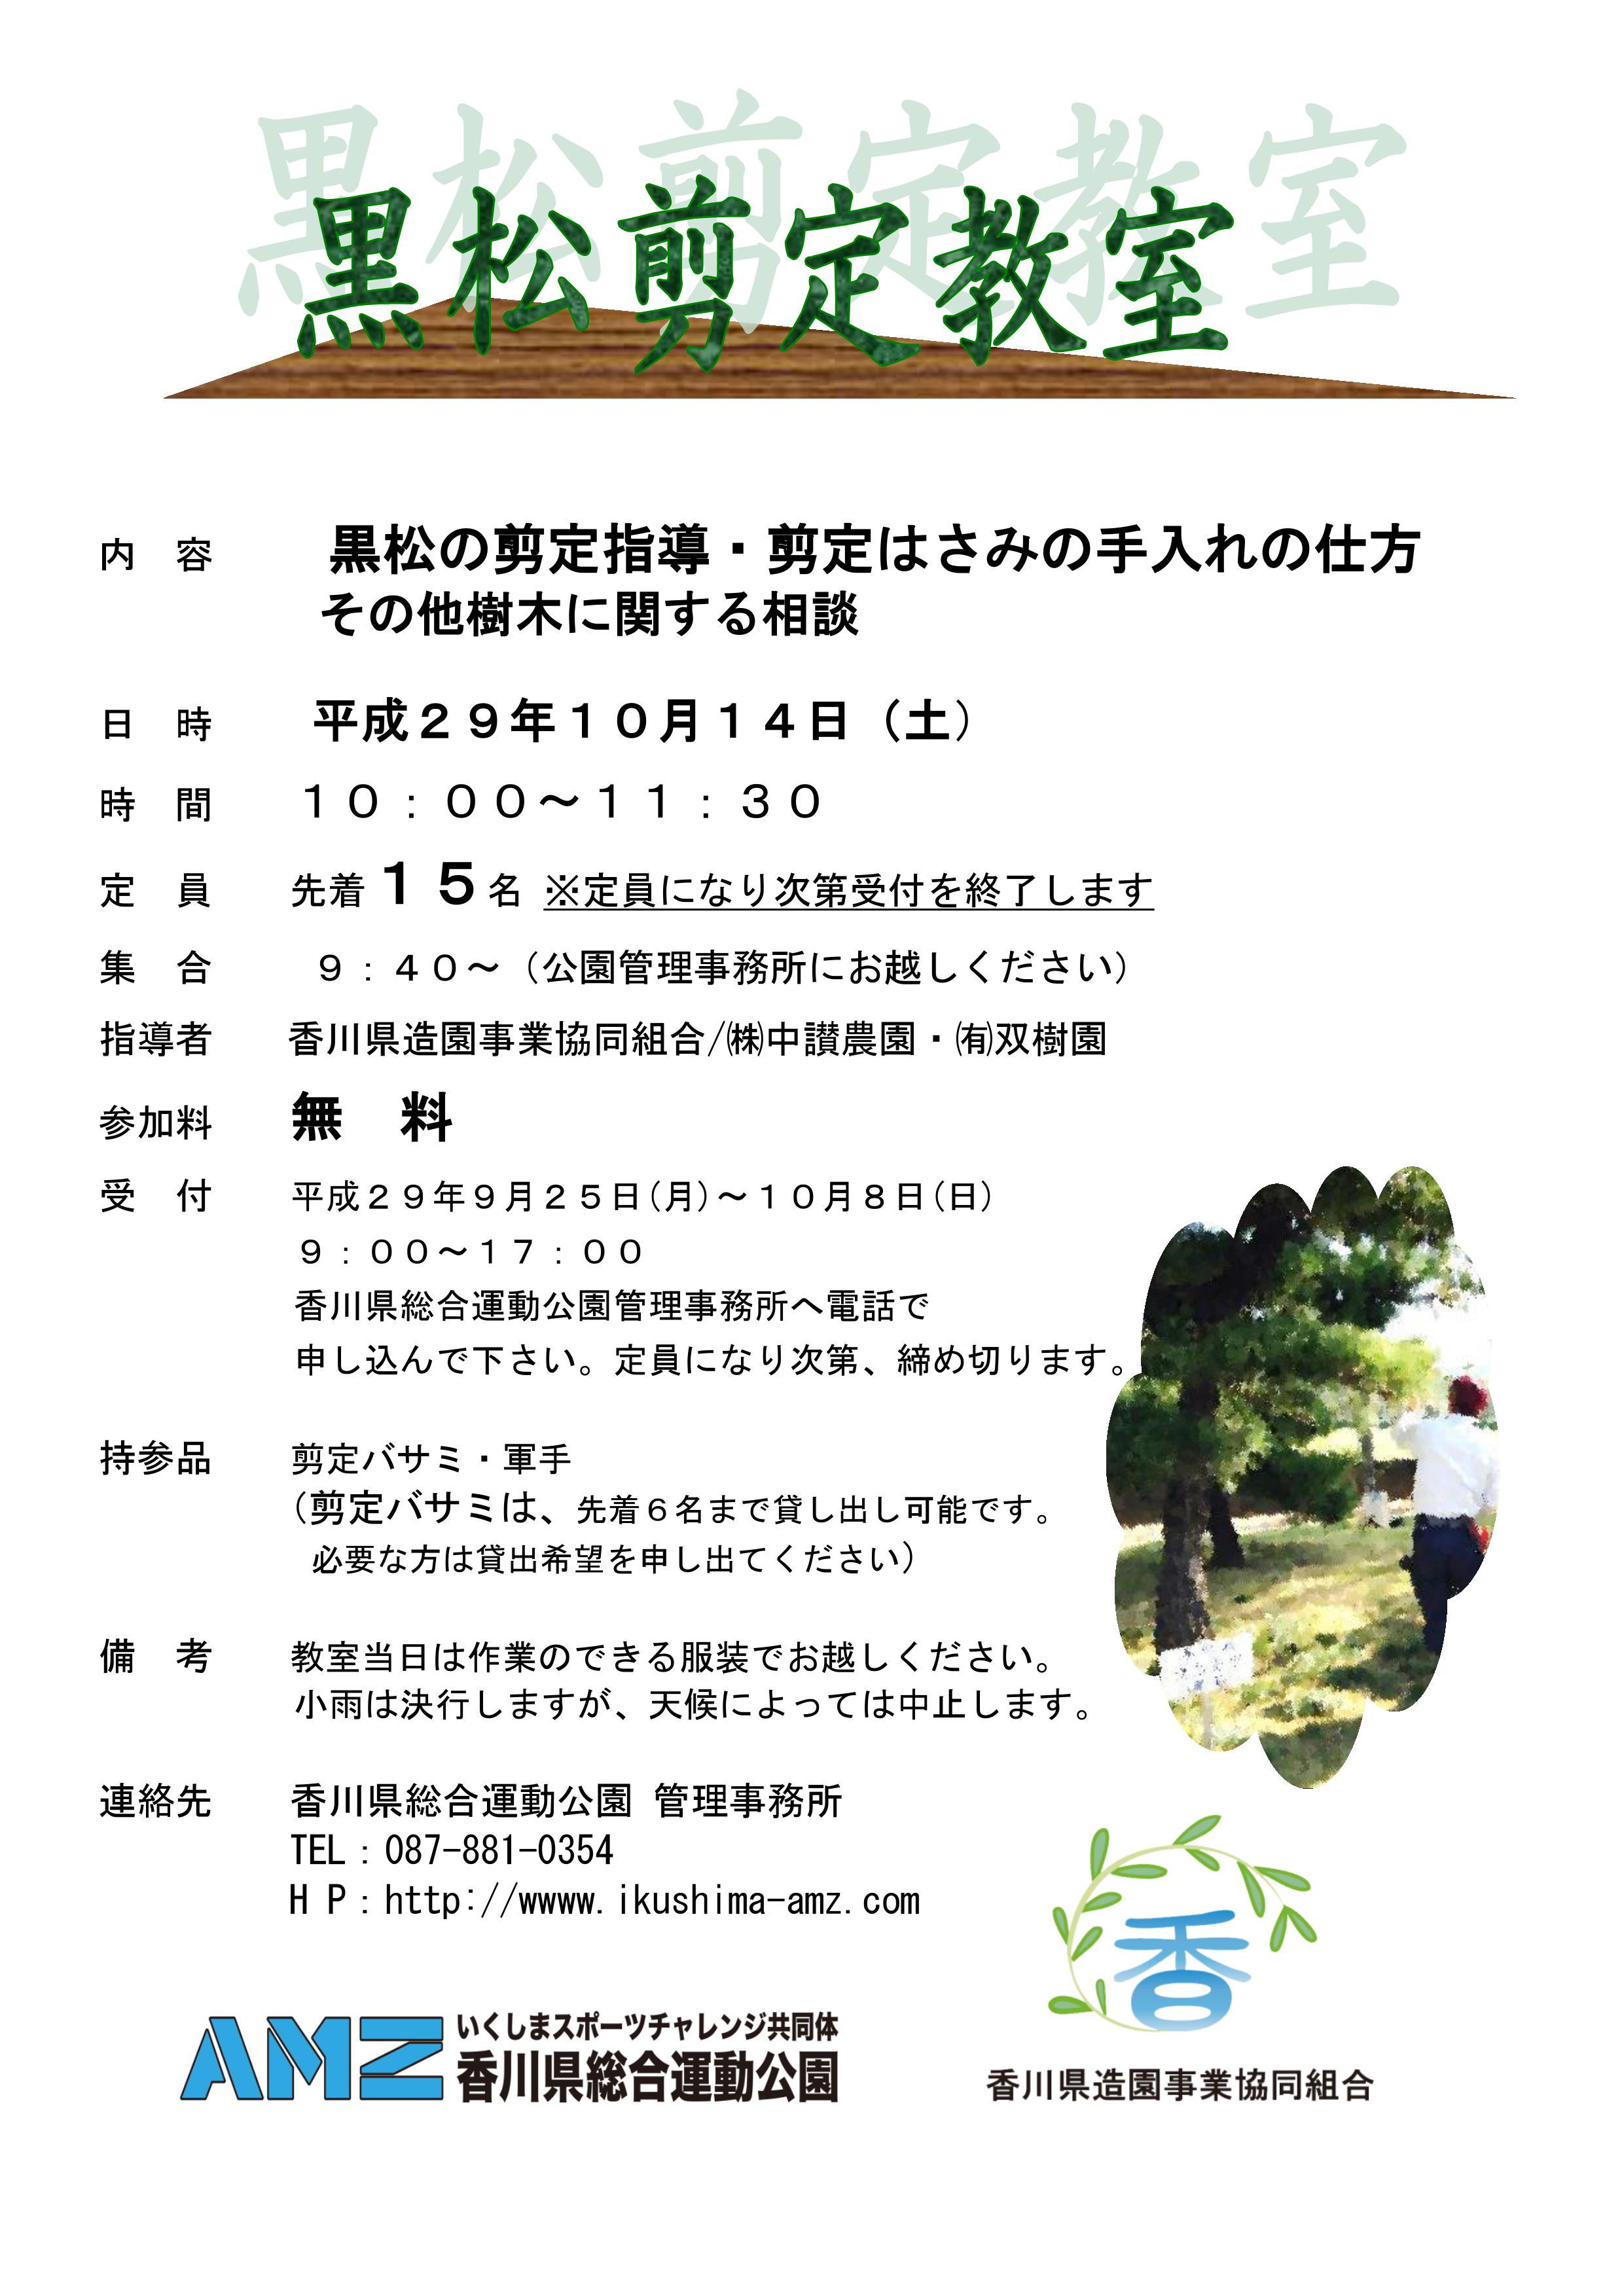 １０月１４日 土 黒松剪定教室のご案内 香川県総合運動公園 いくしまスポーツチャレンジ共同体